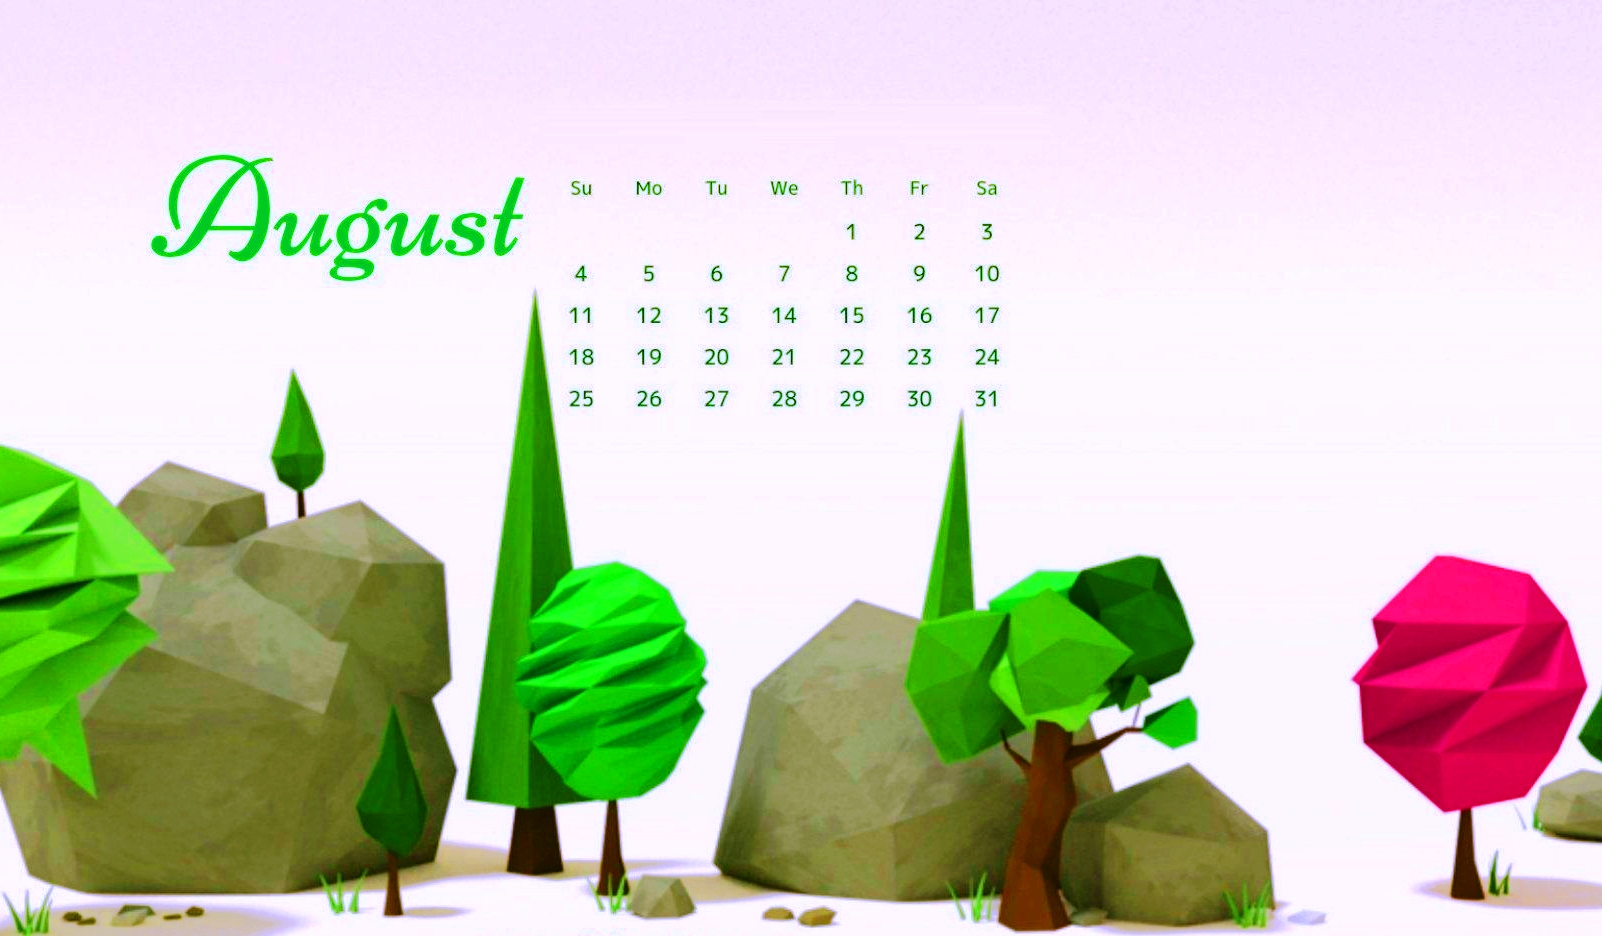 August 2019 Calendar Wallpaper For Desktop - August 2019 Desktop Calendar - HD Wallpaper 